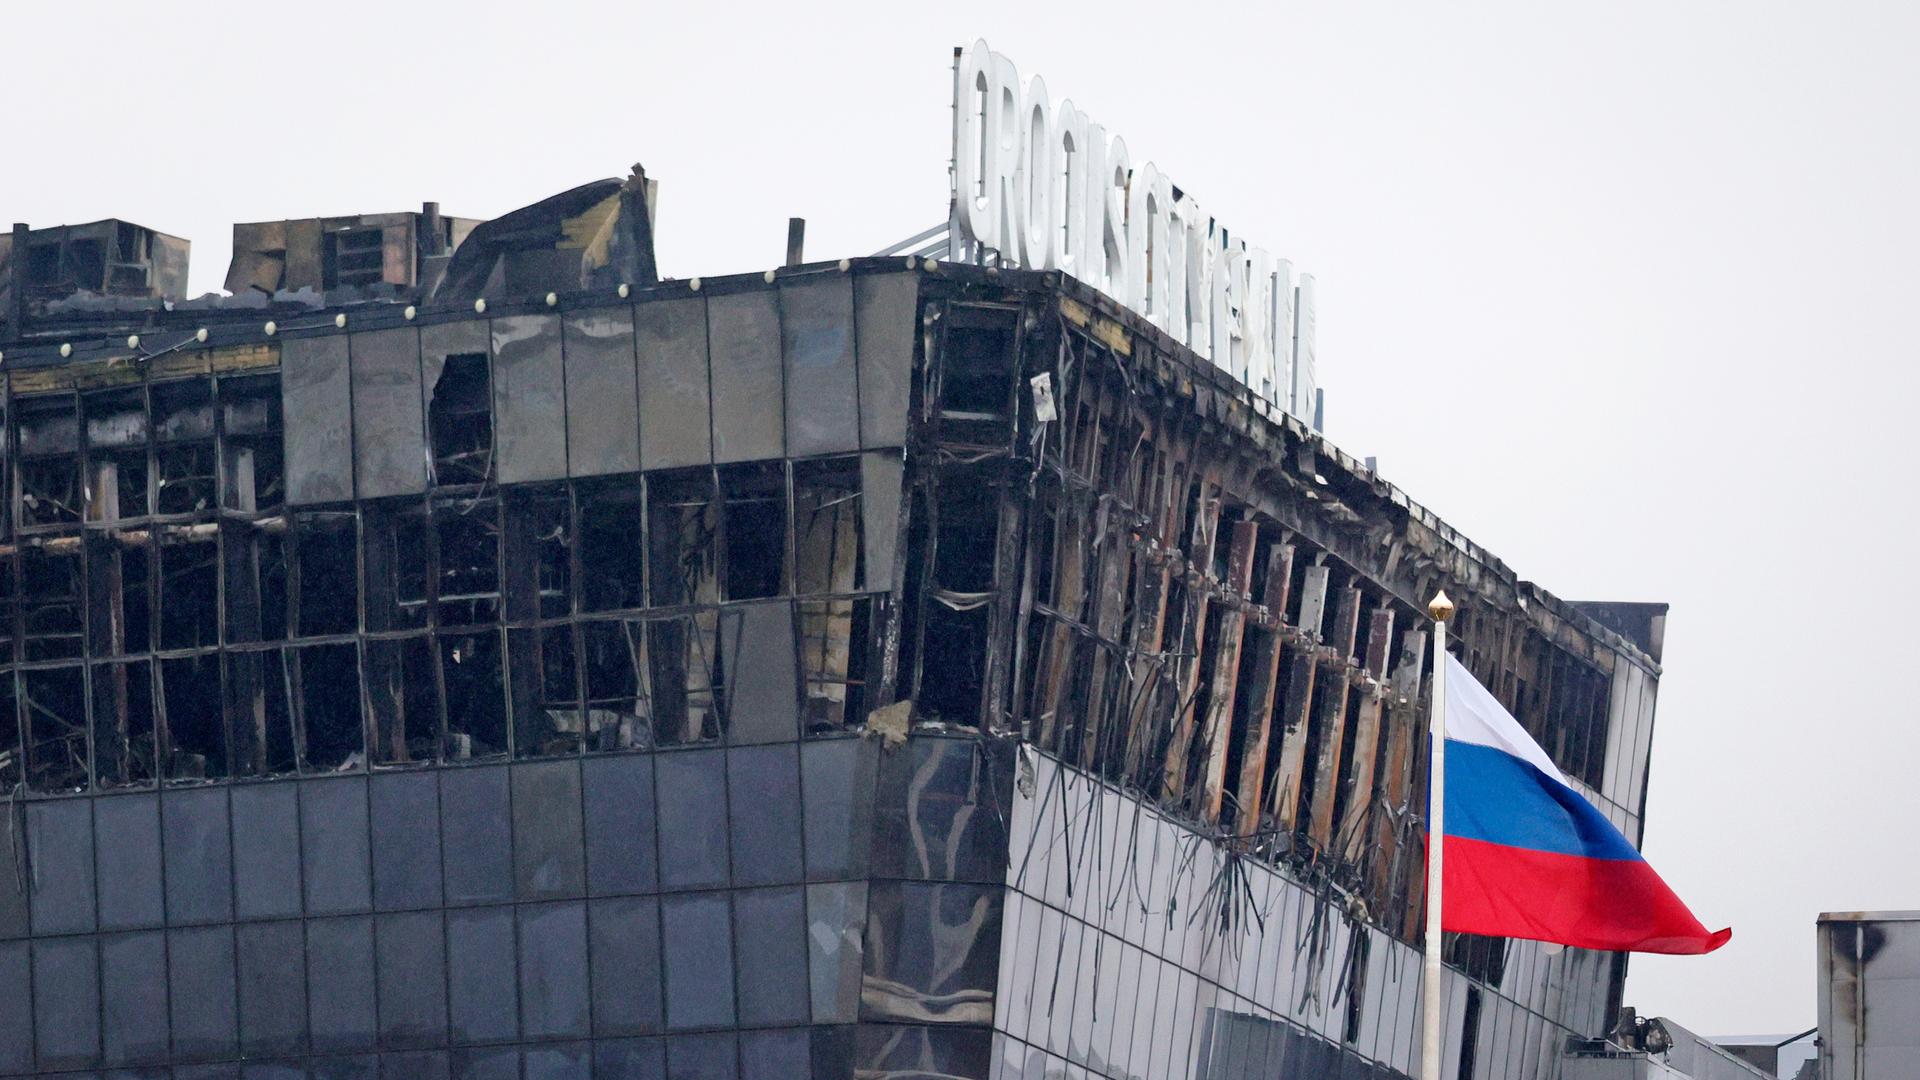 Blick auf das zerstörte Gebäude in Krasnogorsk. Die Glasfassade ist durch den Brand schwer beschädigt. Im Vordergrund weht eine russische Fahne.